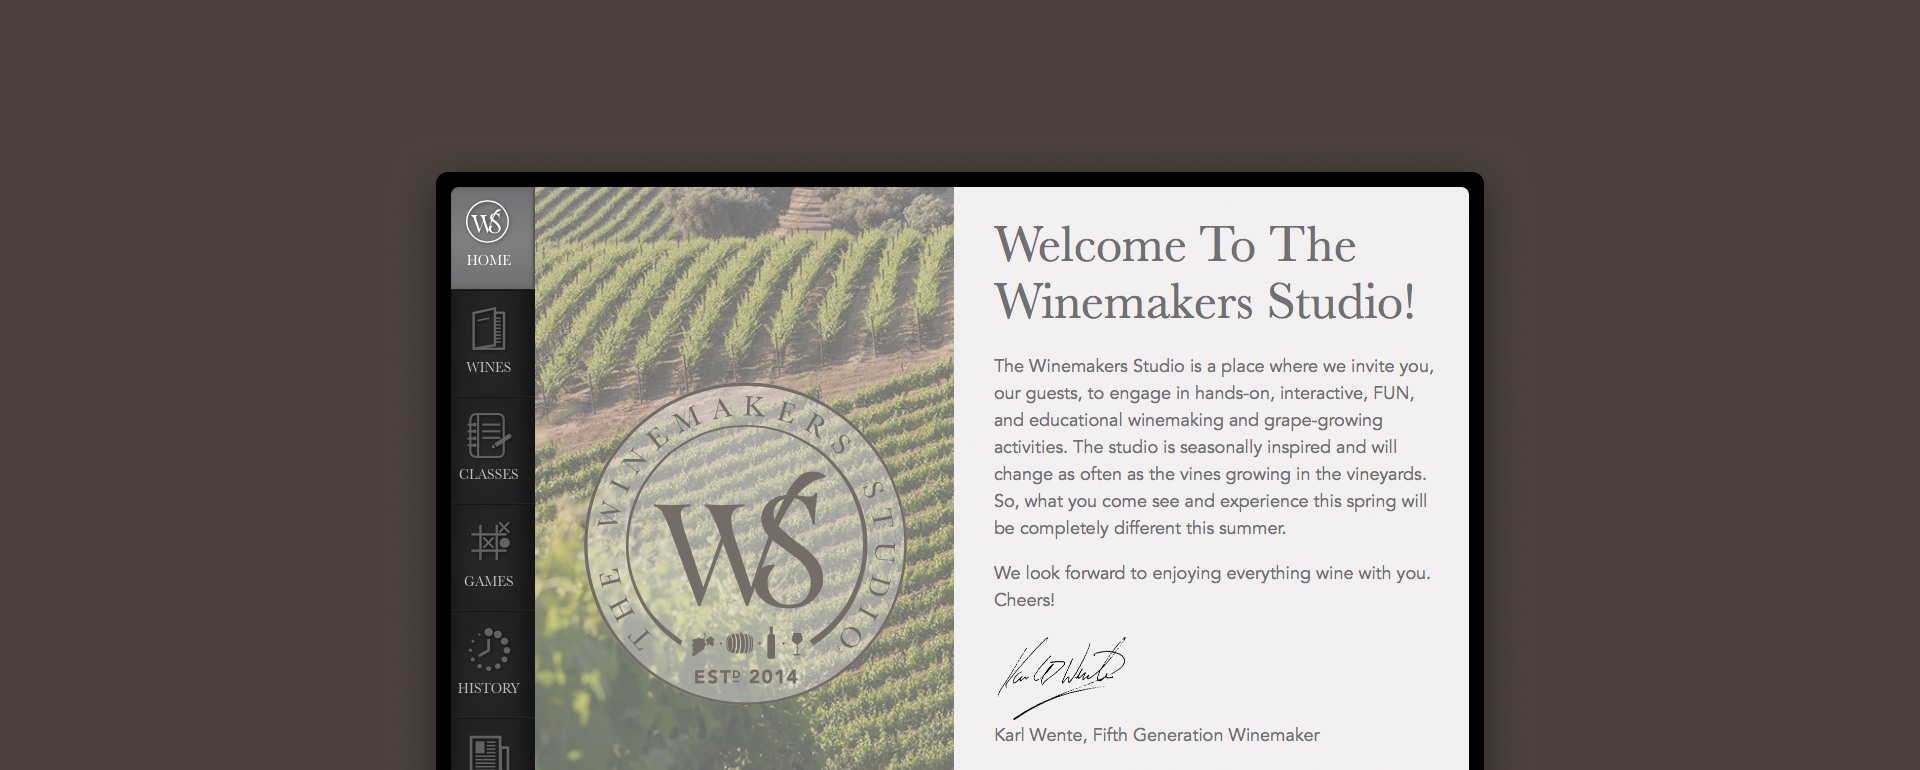 Winemaker Studio App welcome page